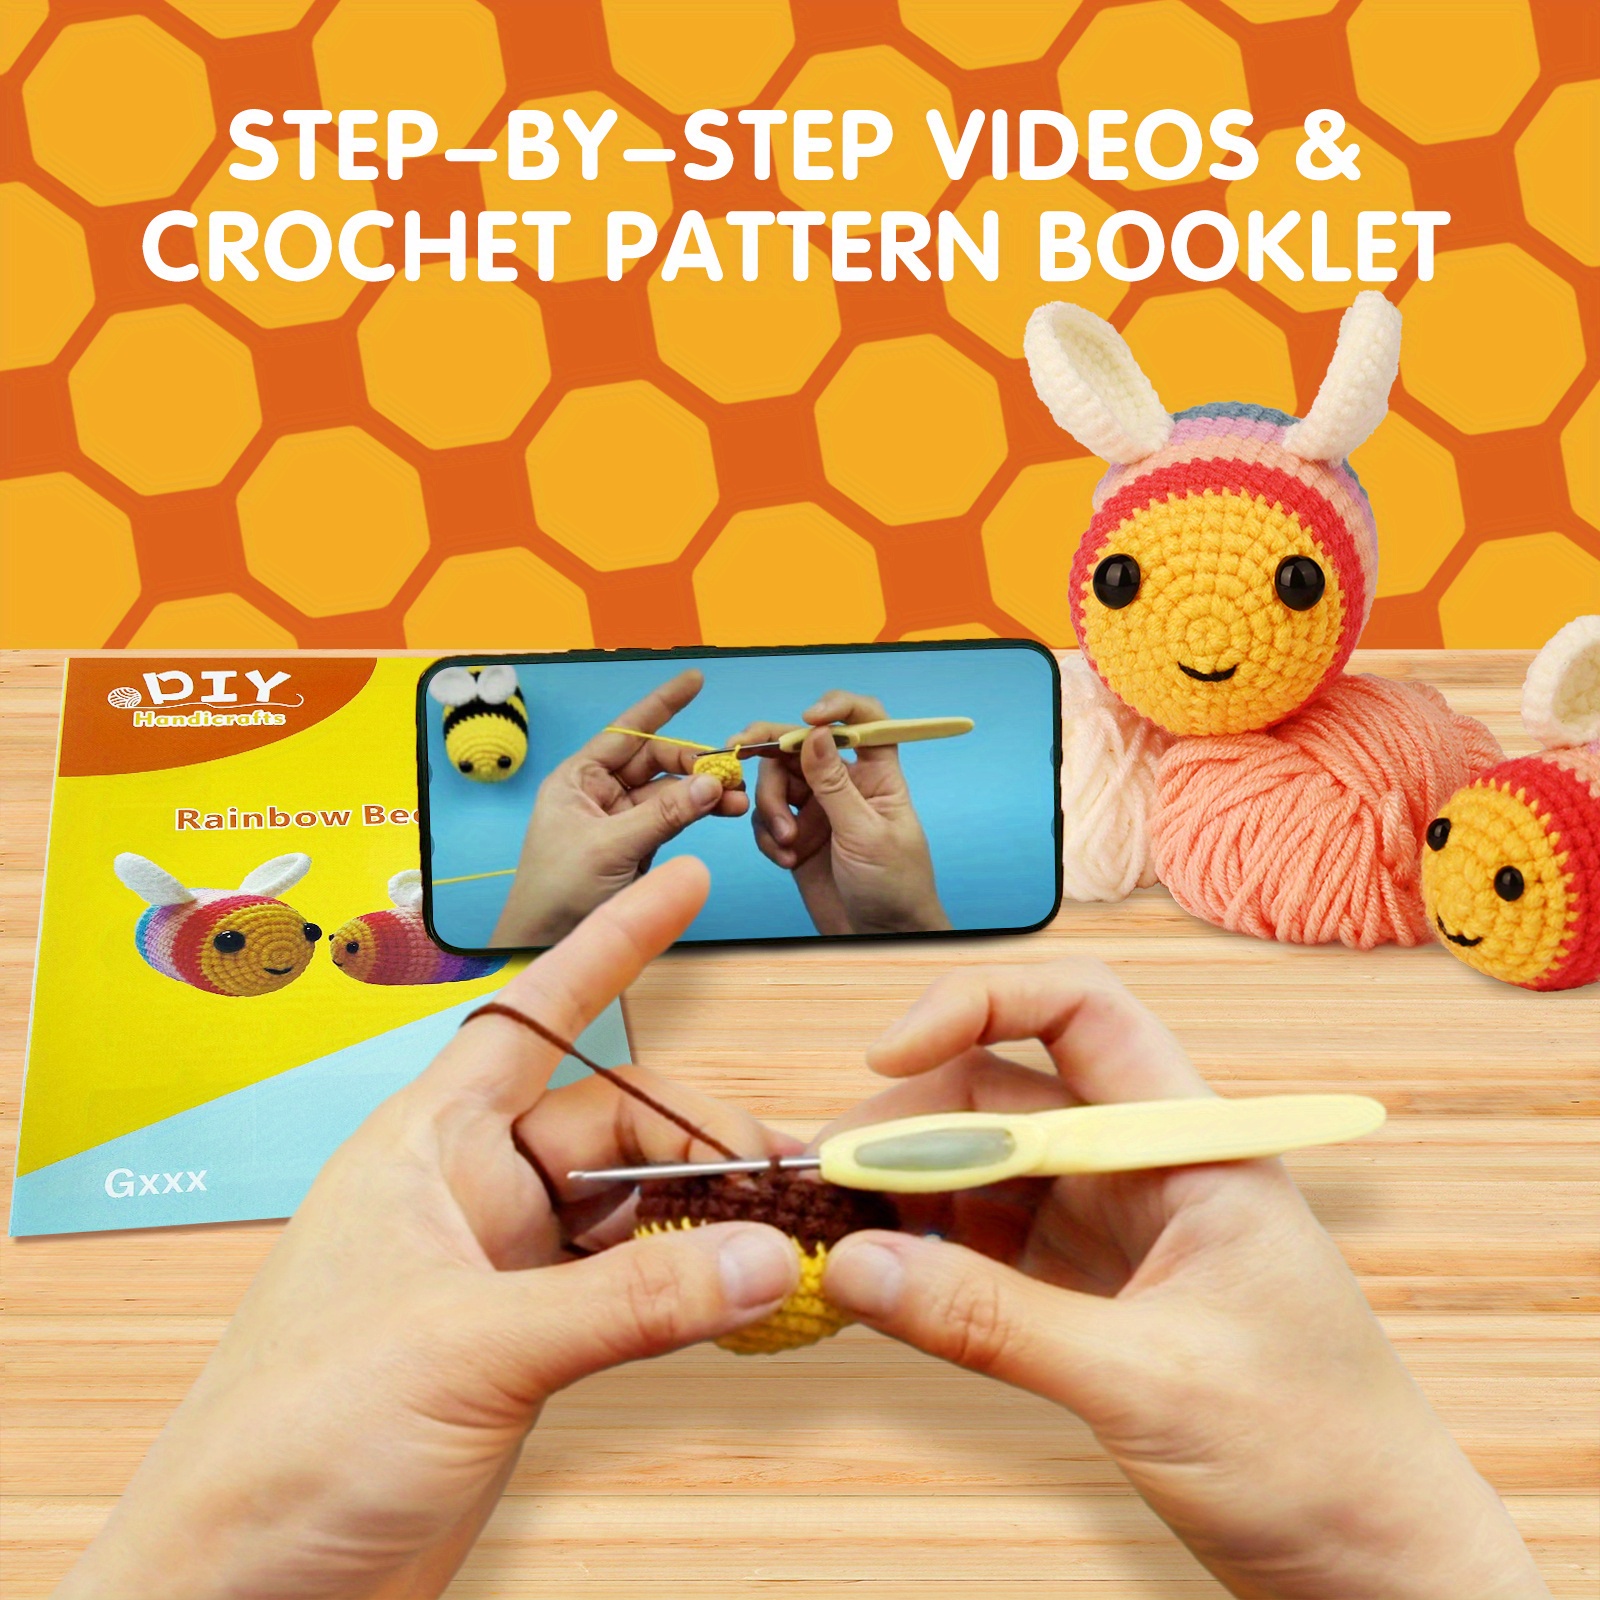 Beginner Crochet Kit, Crochet Kits for Kids and Adults, 3PCS